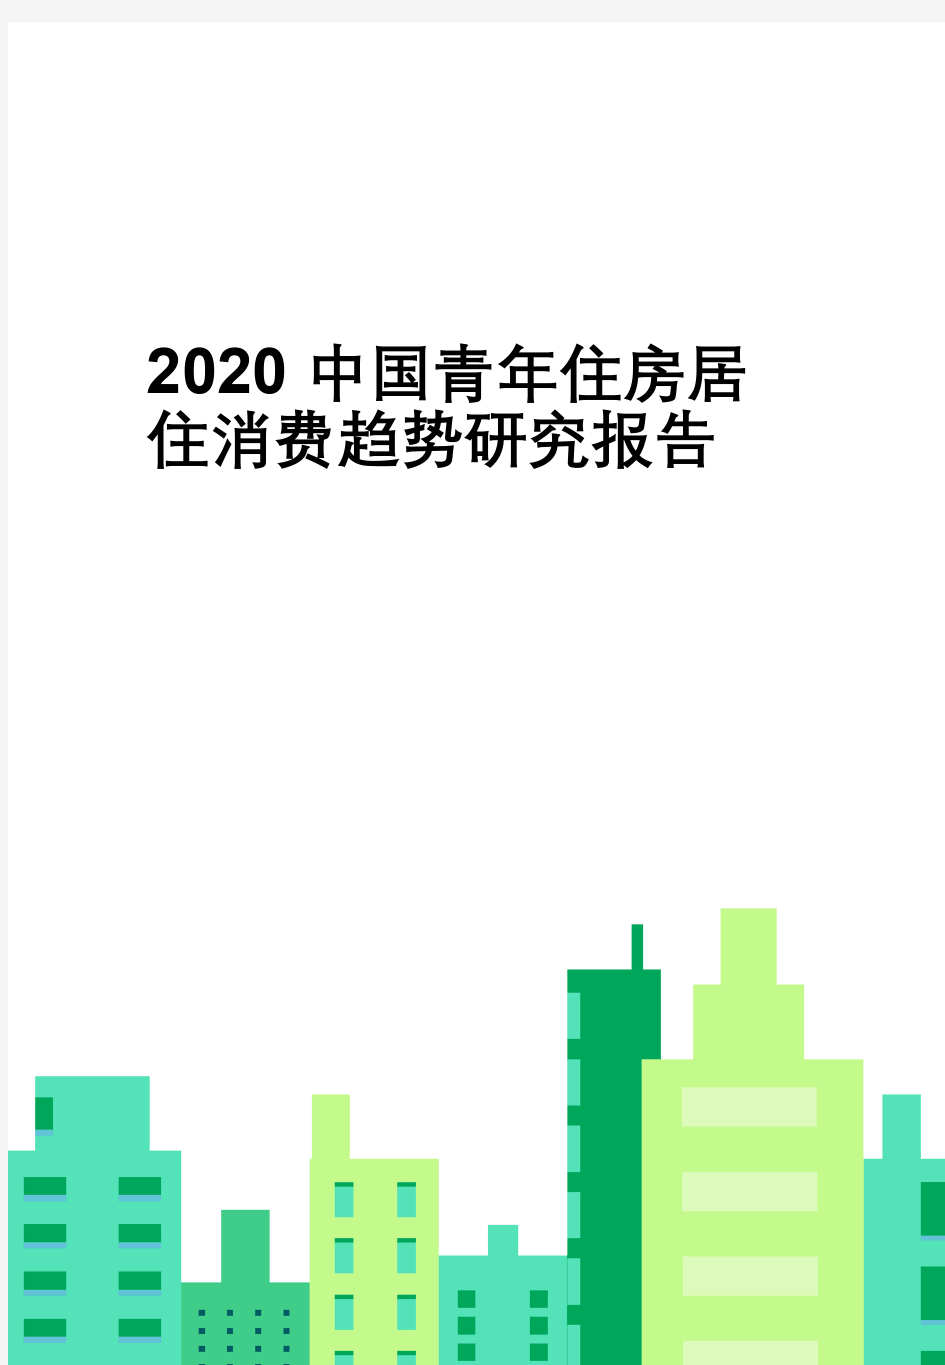 2020中国青年住房及居家消费趋势研究报告